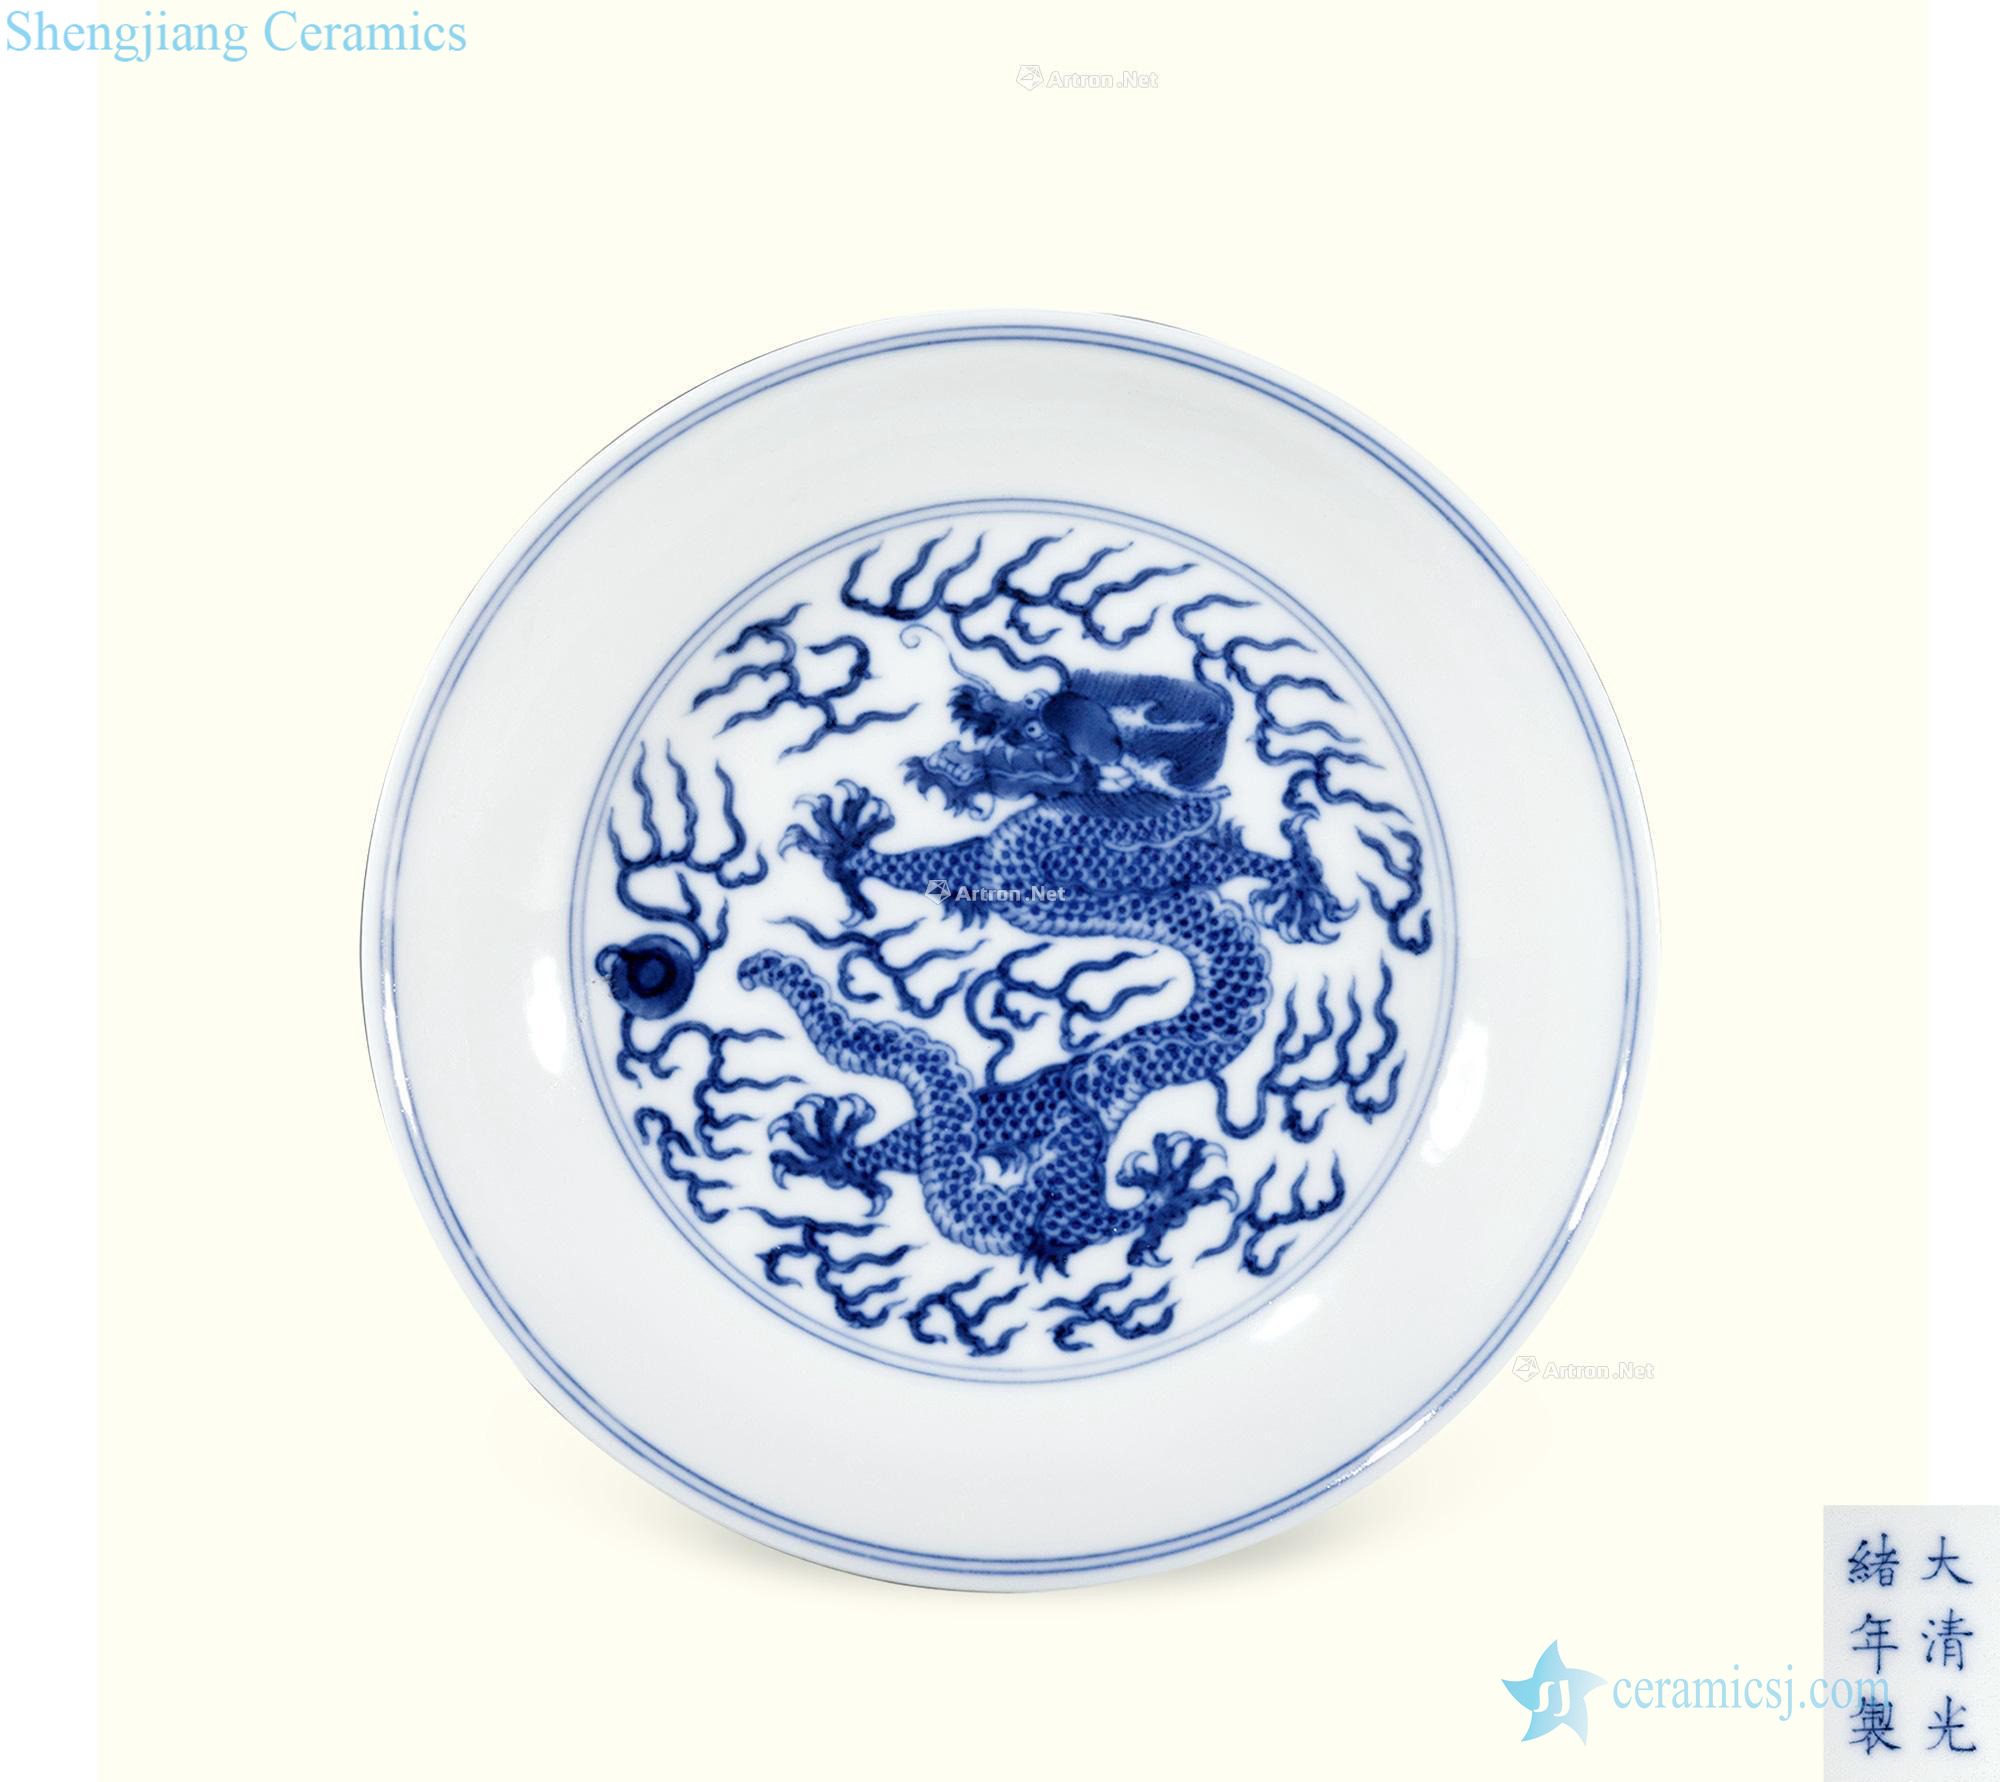 Qing guangxu Kiln blue sea dragon plate